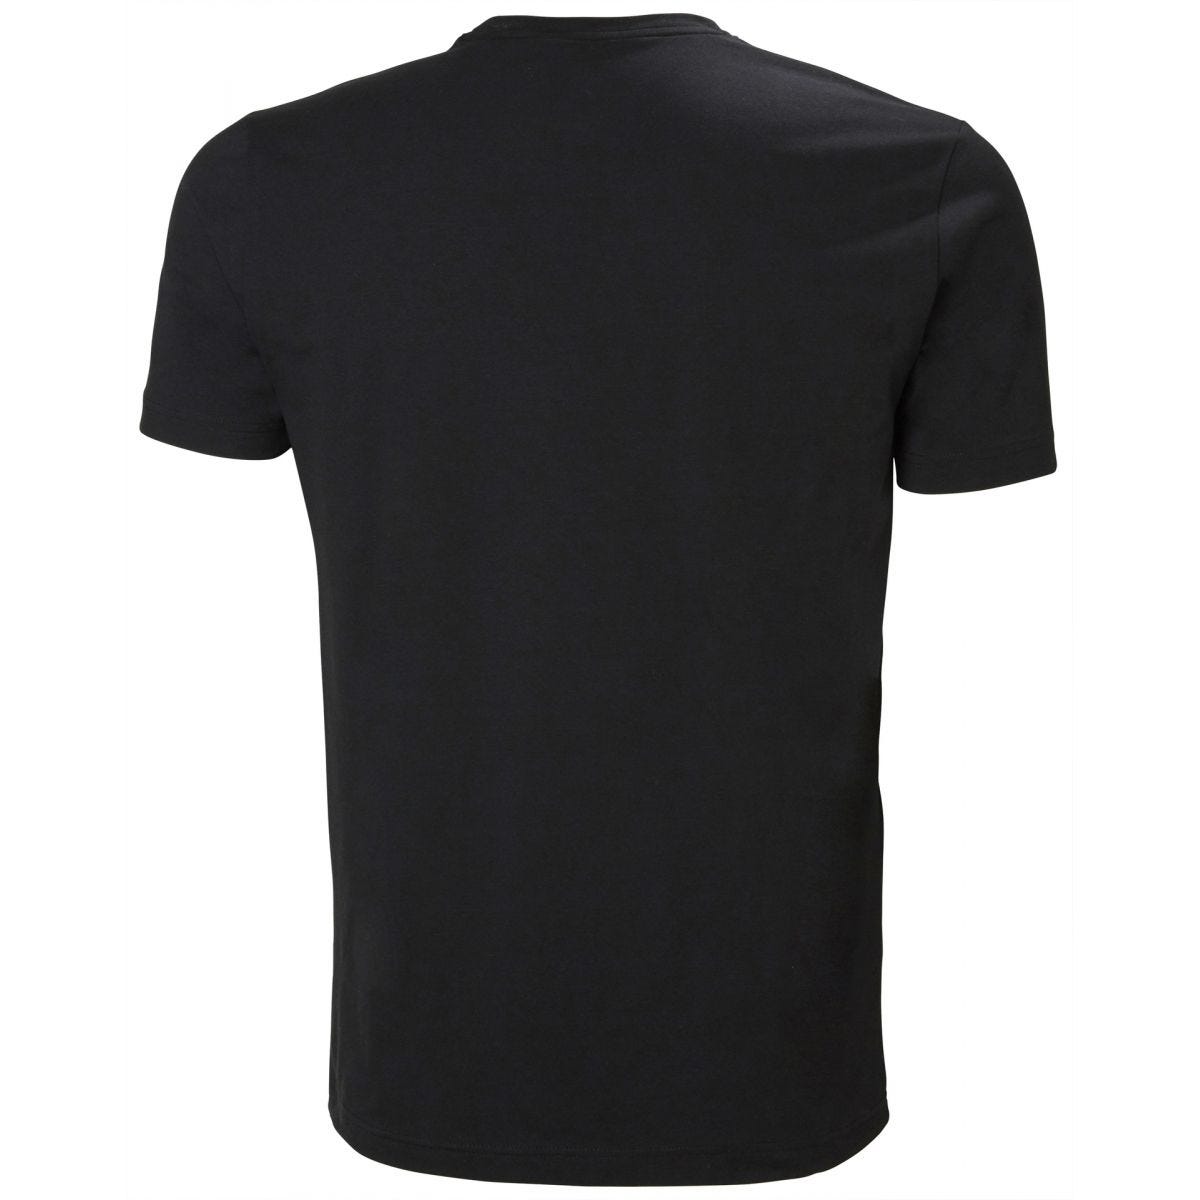 Tee-shirt Kensington Noir - Helly Hansen - Taille 2XL 1